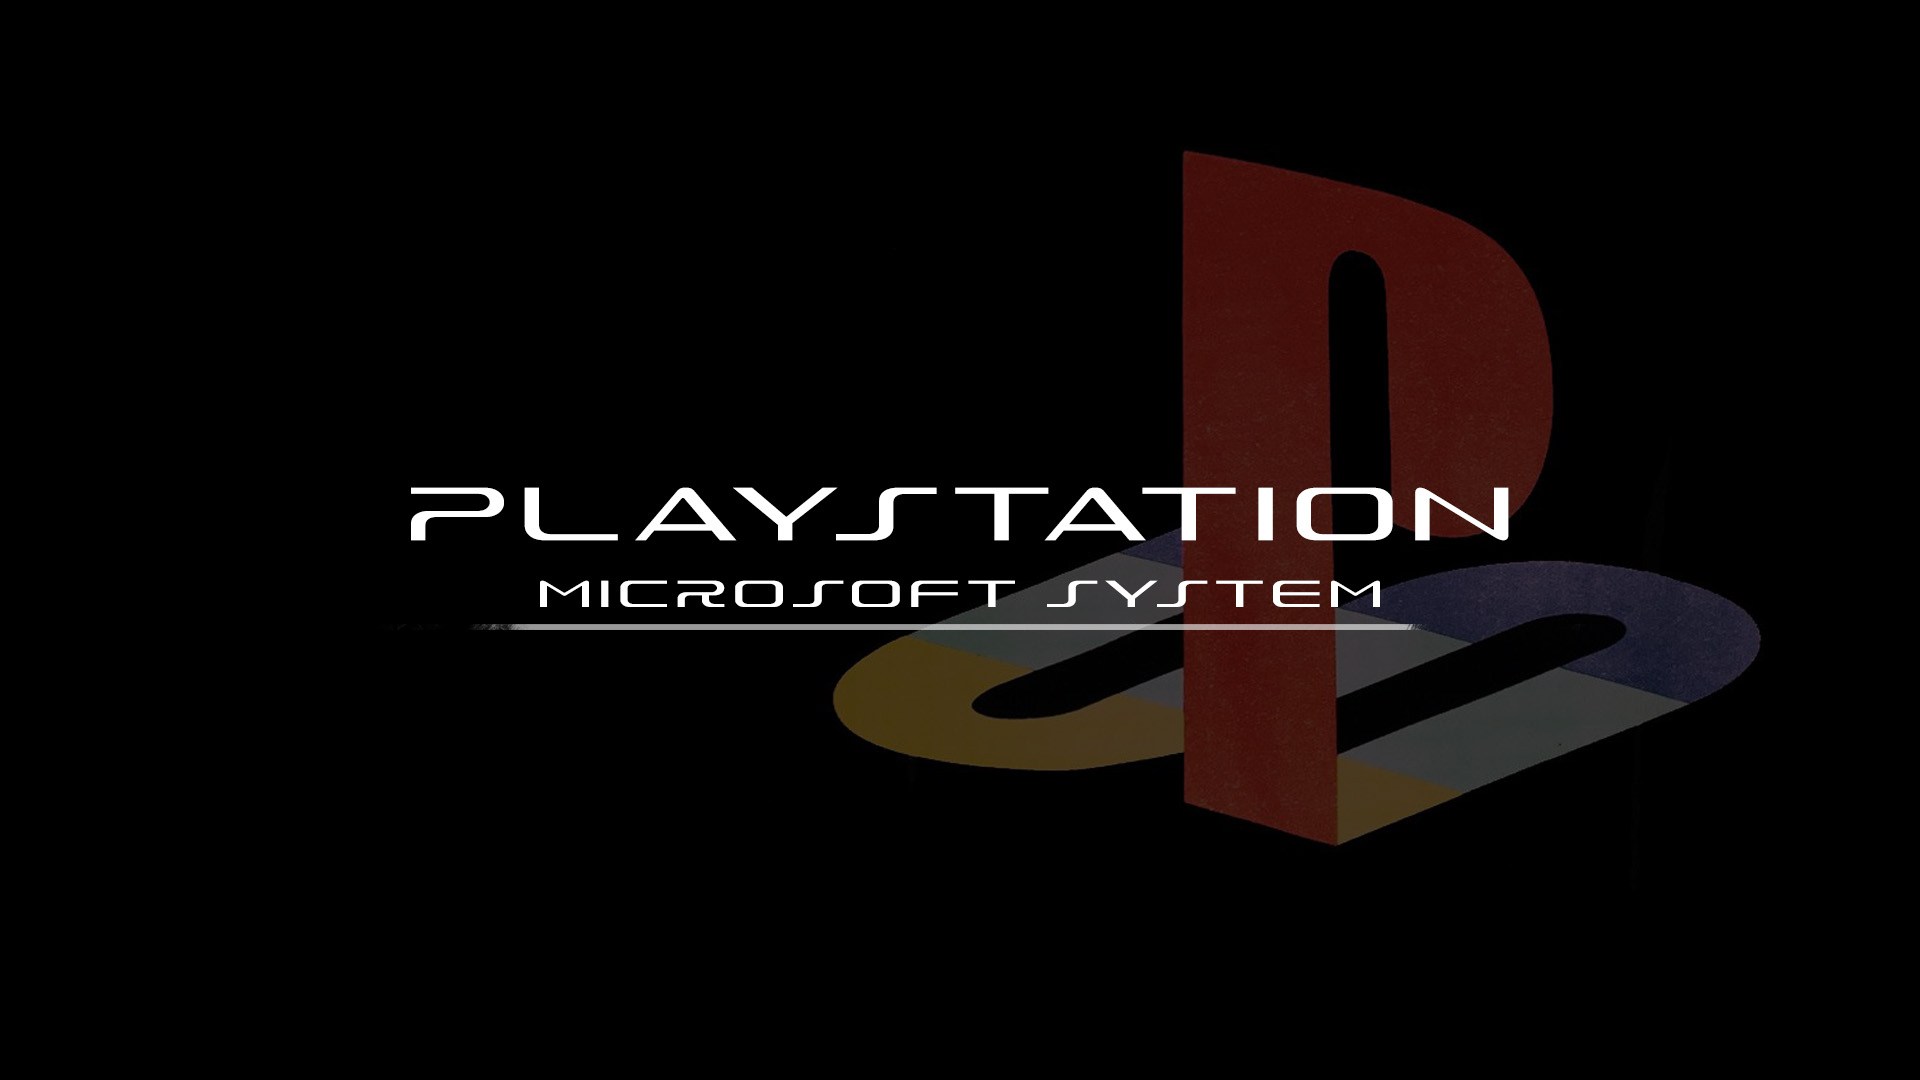 PlayStation PlayStation 2 PlayStation 3 PlayStation 4 Playstation 4 Pro Playstation 5 PlayStation Sh 1920x1080